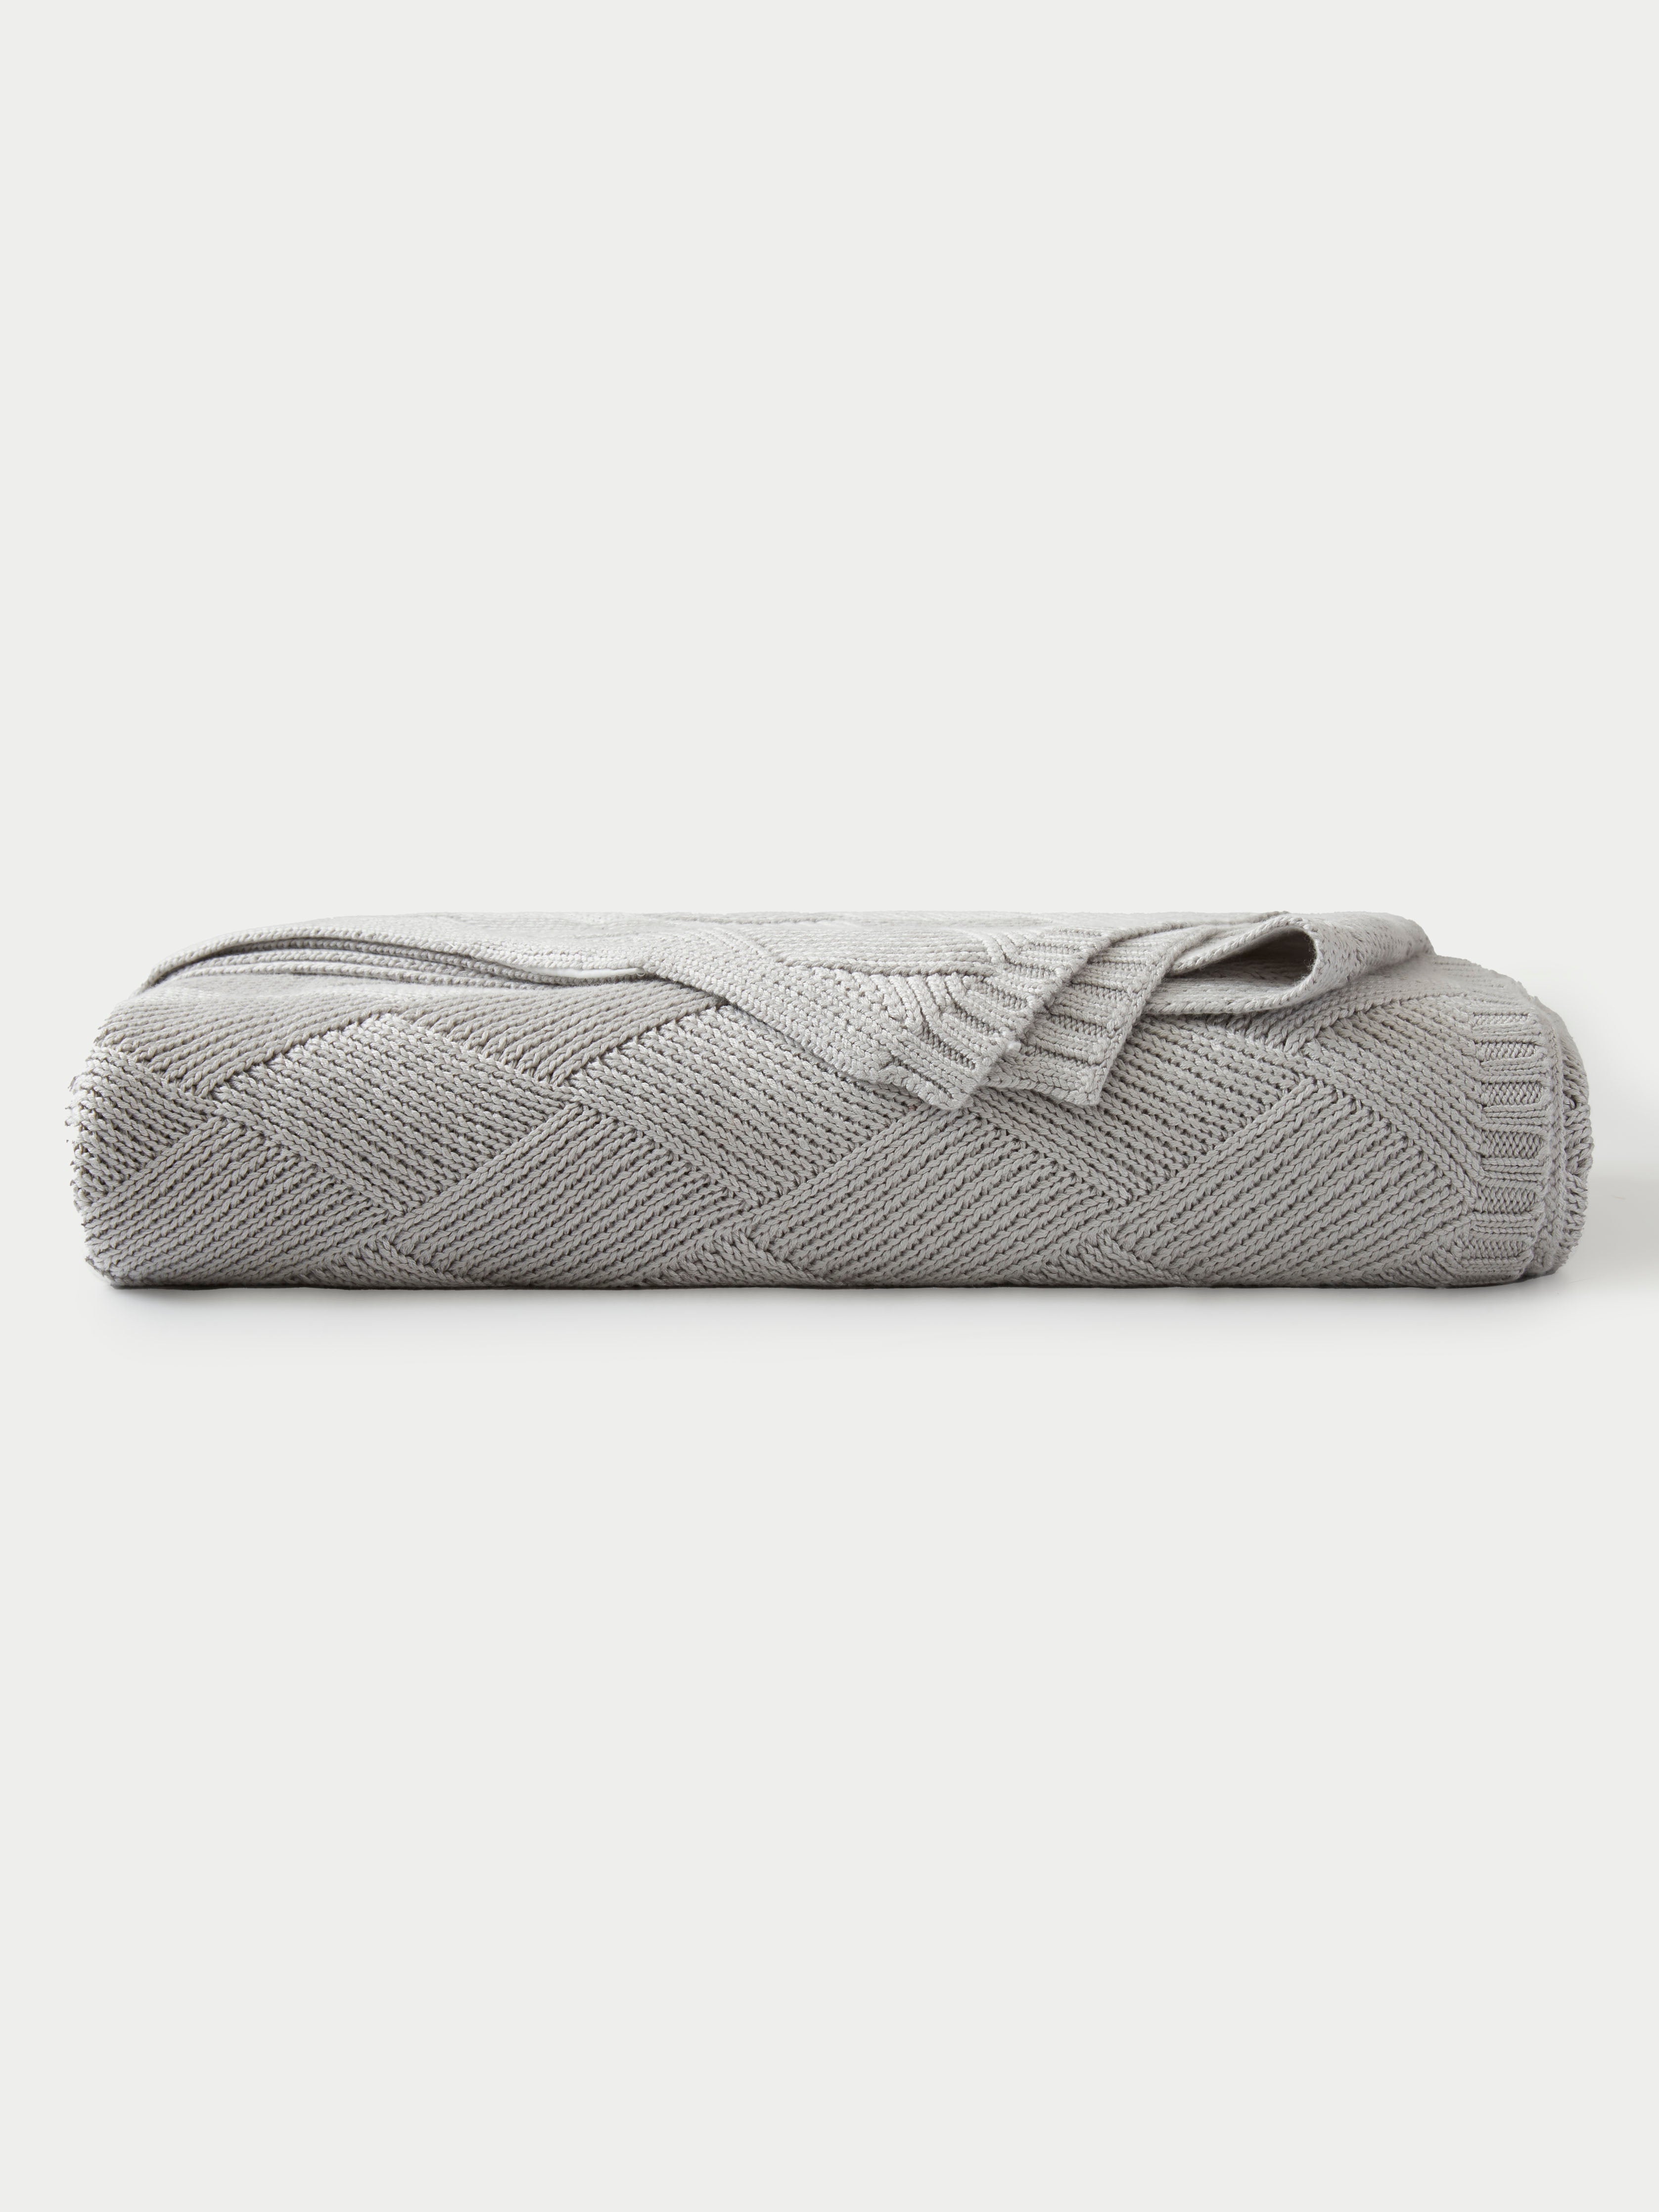 Light Grey Diamond Knit Blanket neatly folded. |Color:Light Grey